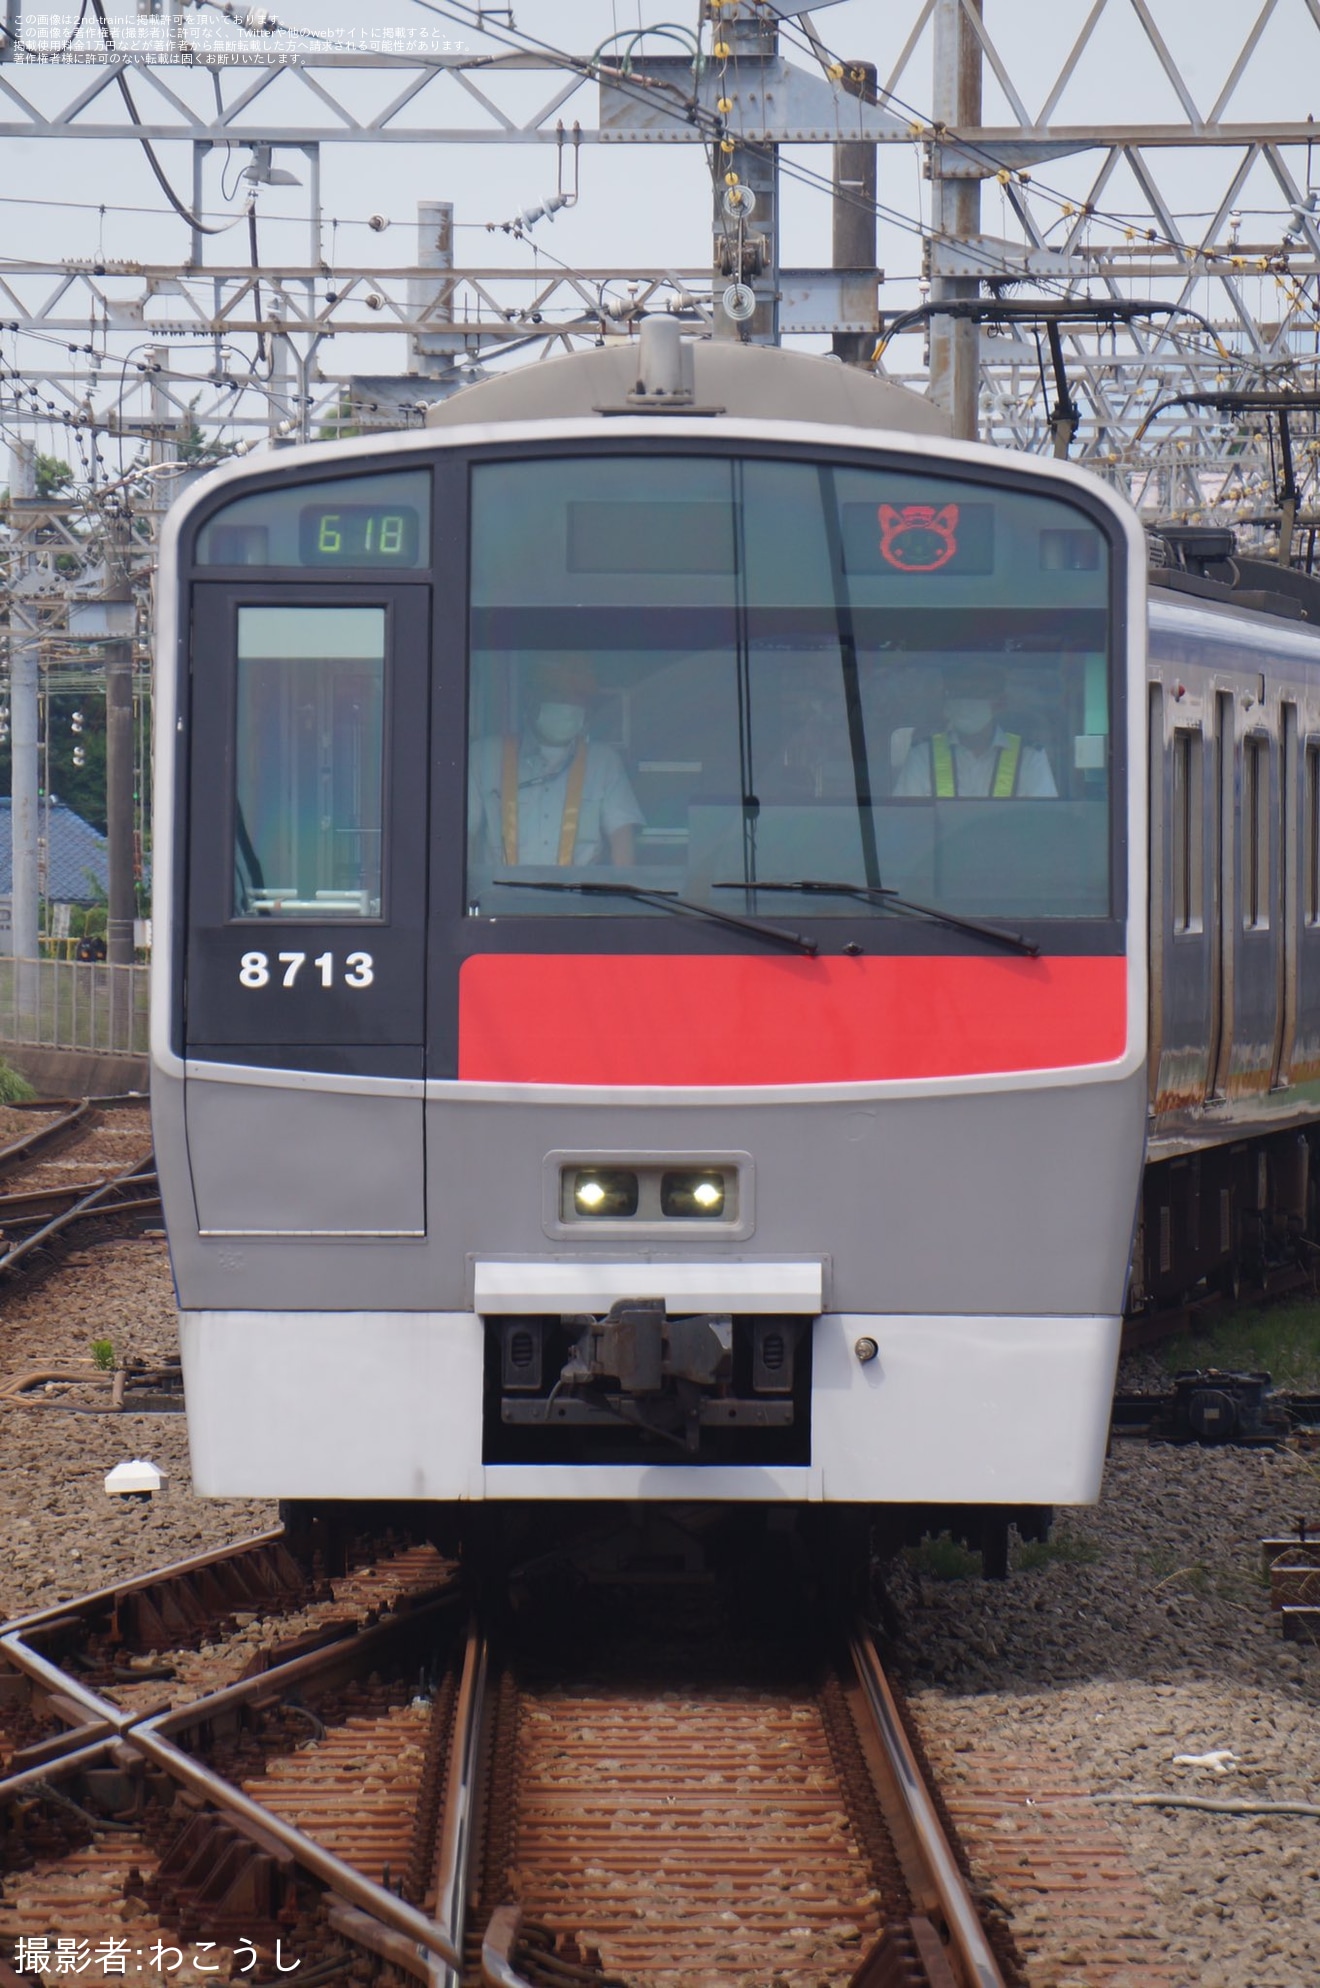 【相鉄】8000系8713×10(8713F)の横浜方前面が赤色(登場時の色[旧塗装]）にの拡大写真